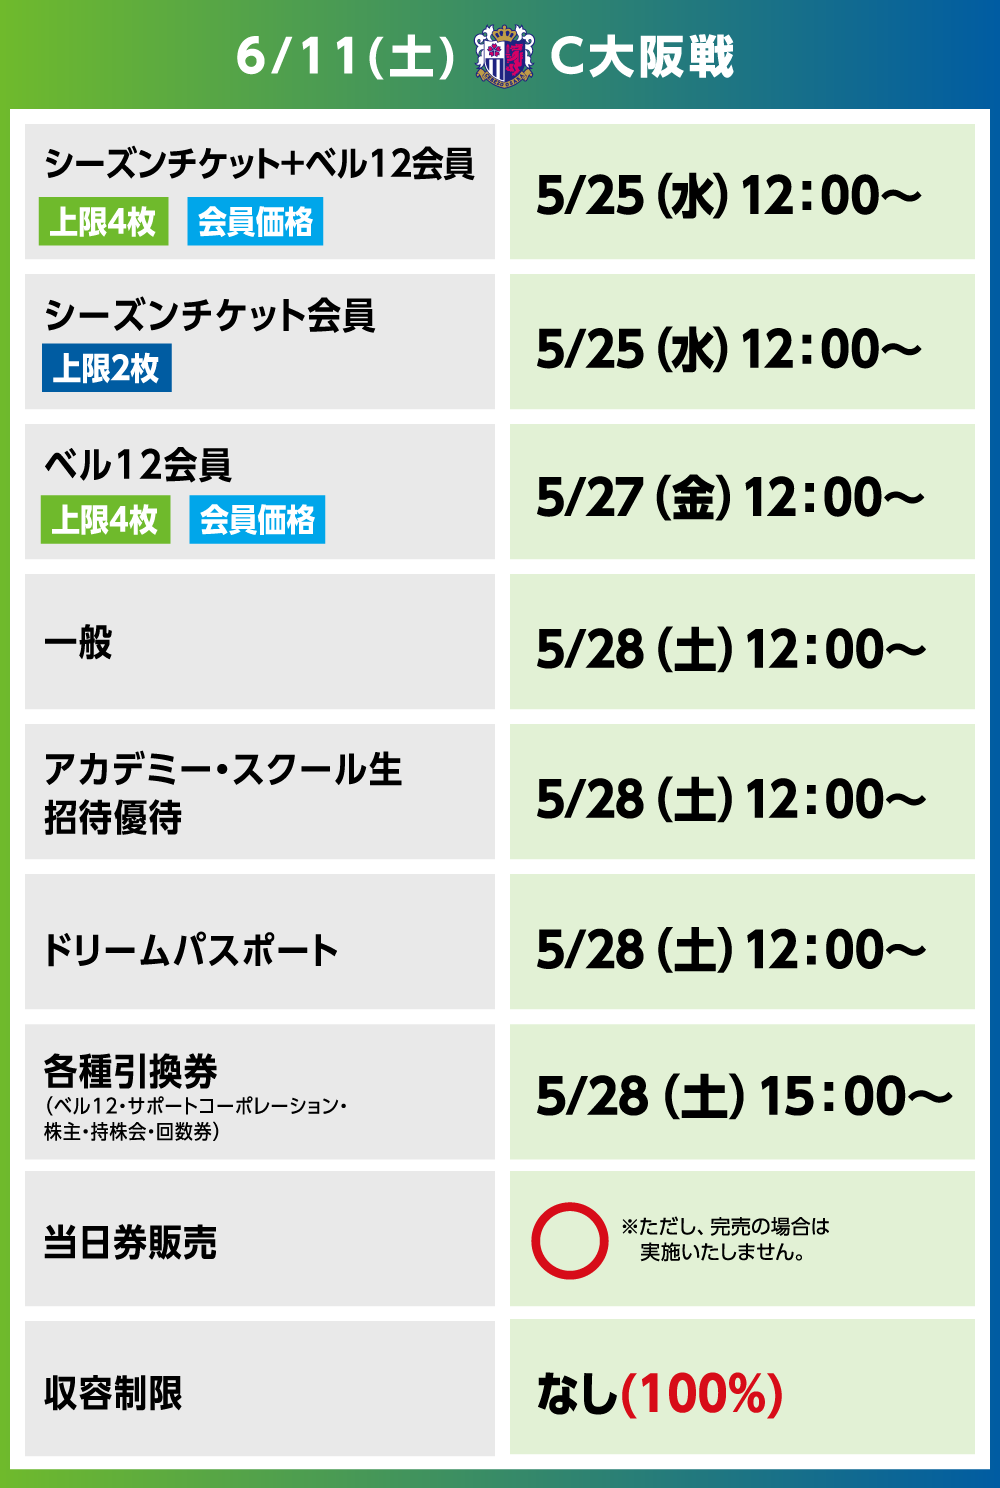 6月11日 土 Ylcプレーオフステージ セレッソ大阪戦のチケットについて 湘南ベルマーレ公式サイト